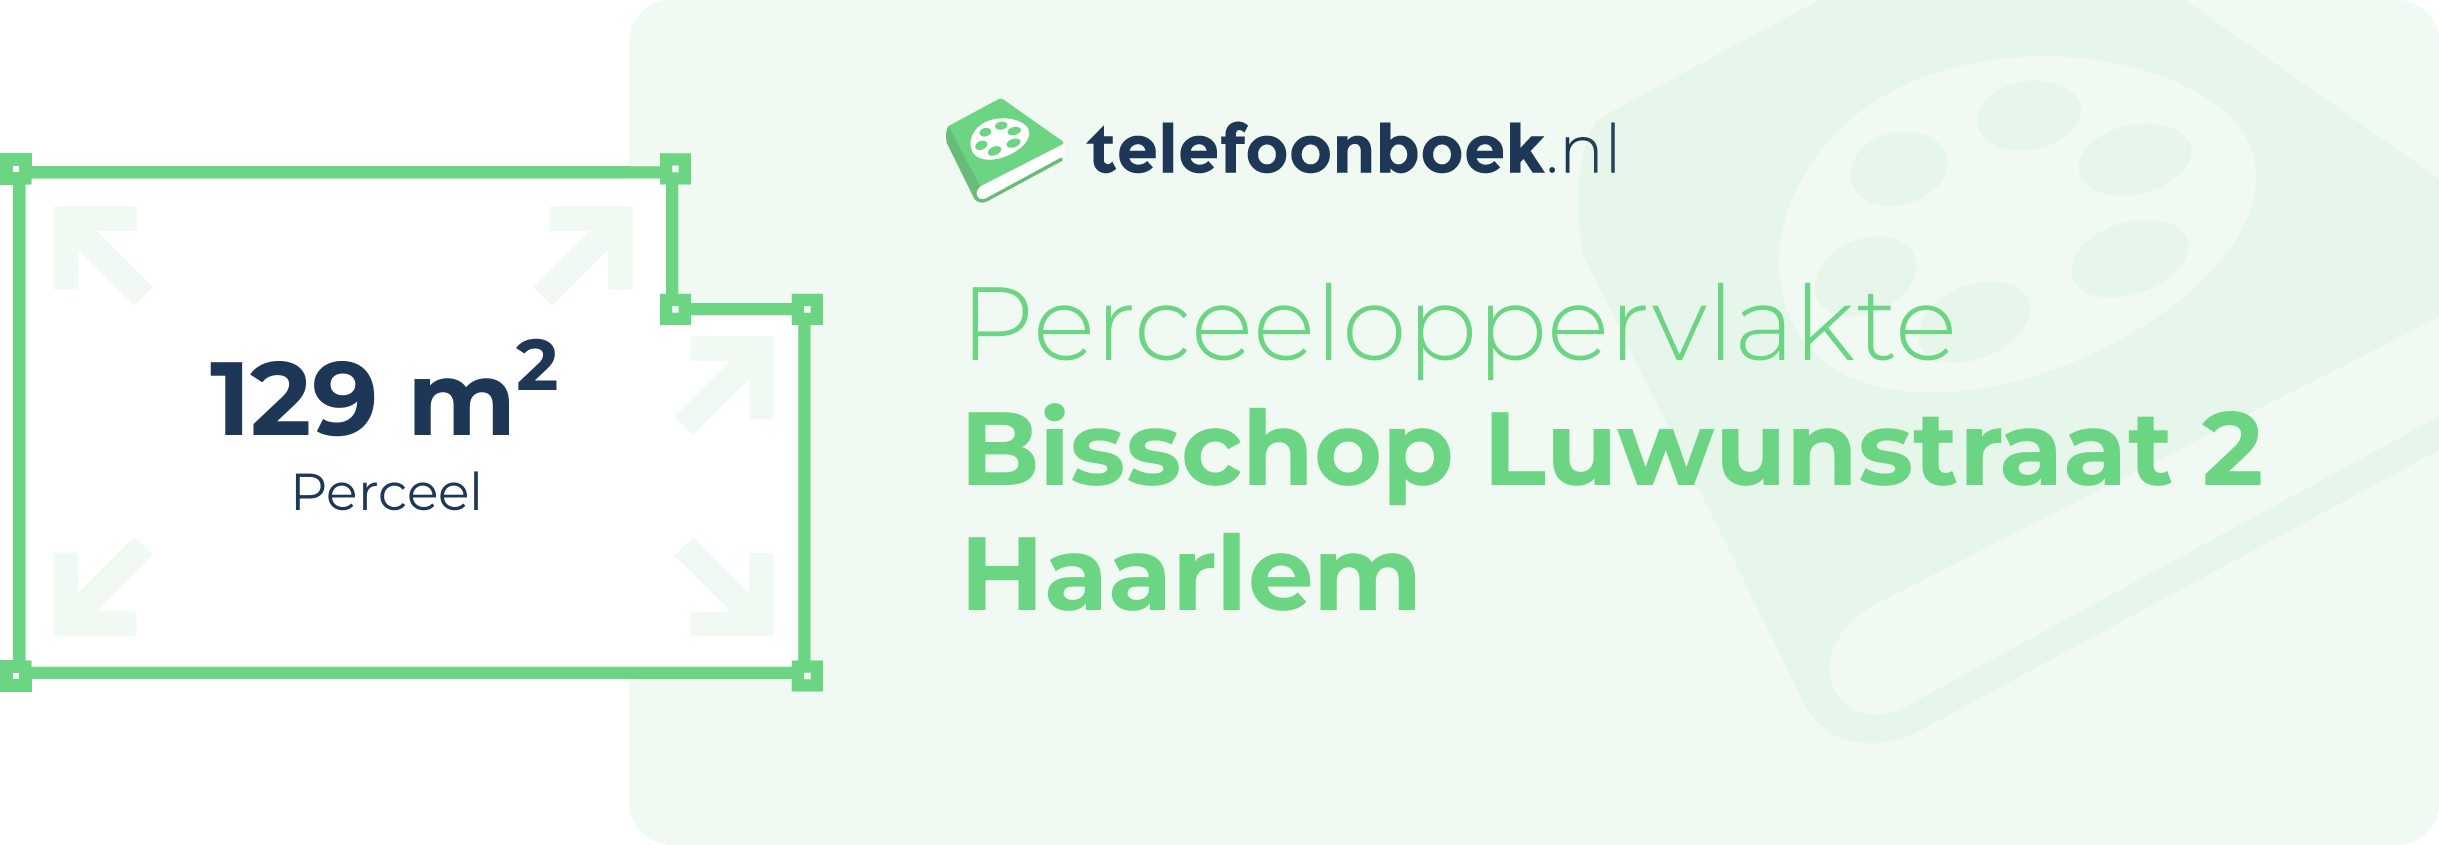 Perceeloppervlakte Bisschop Luwunstraat 2 Haarlem